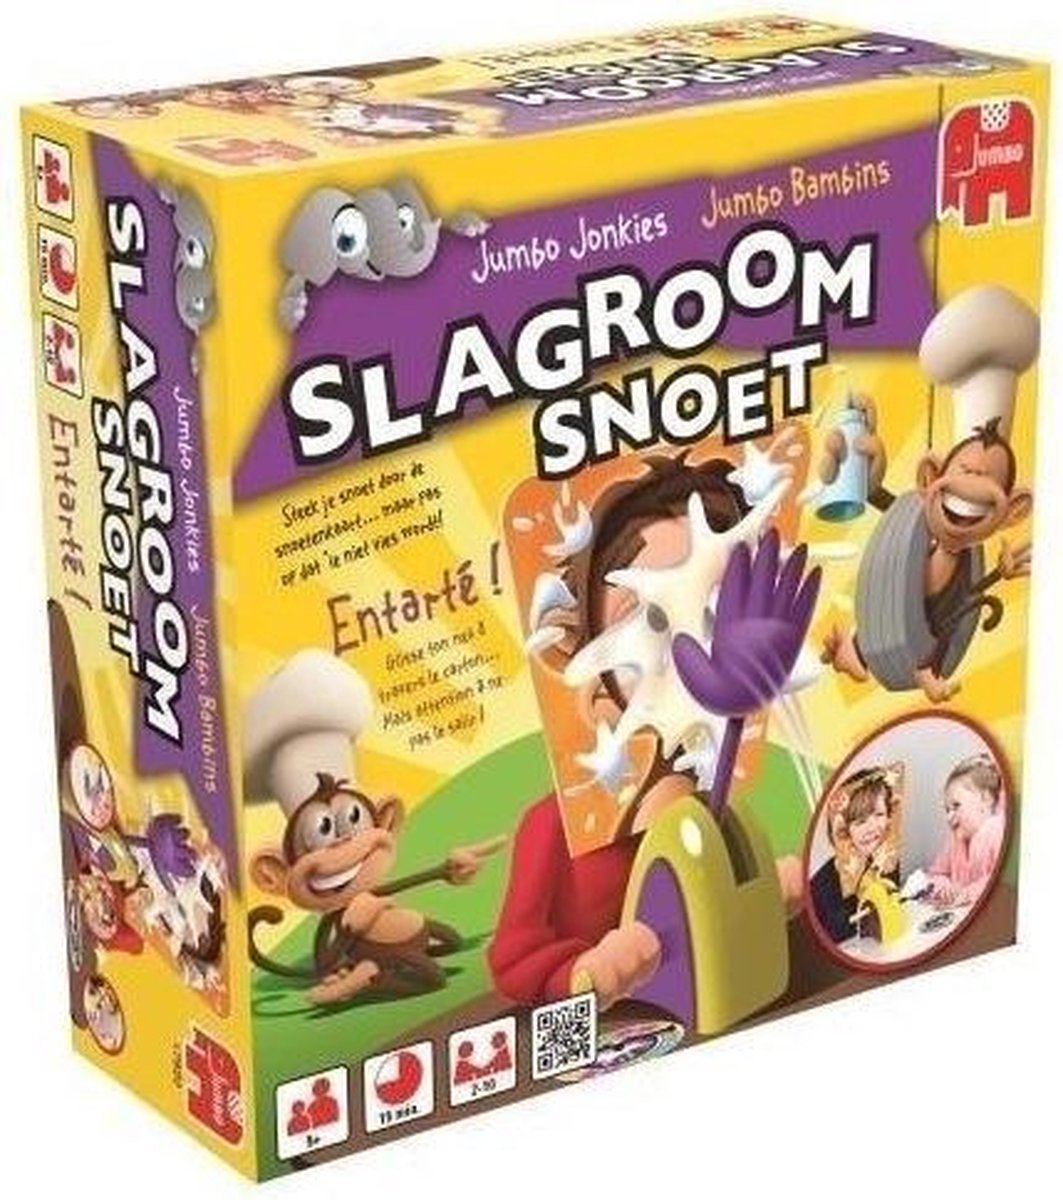 Slagroom Snoet - Kinderspel | Games | bol.com